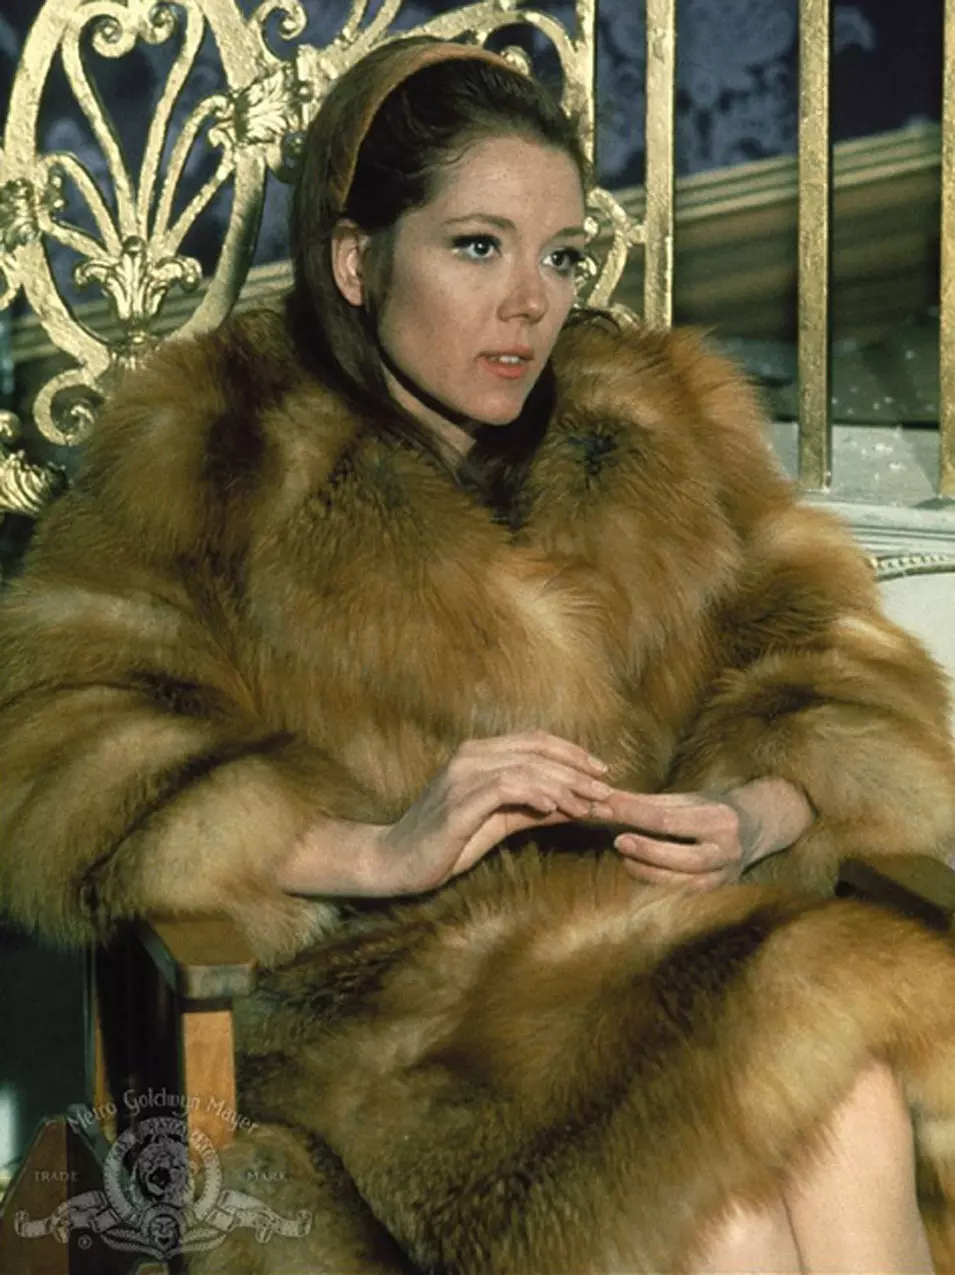 דיאנה ריג מגלמת את טרייסי דראקו בסרט 'בשרות הוד מלכותה', 1969